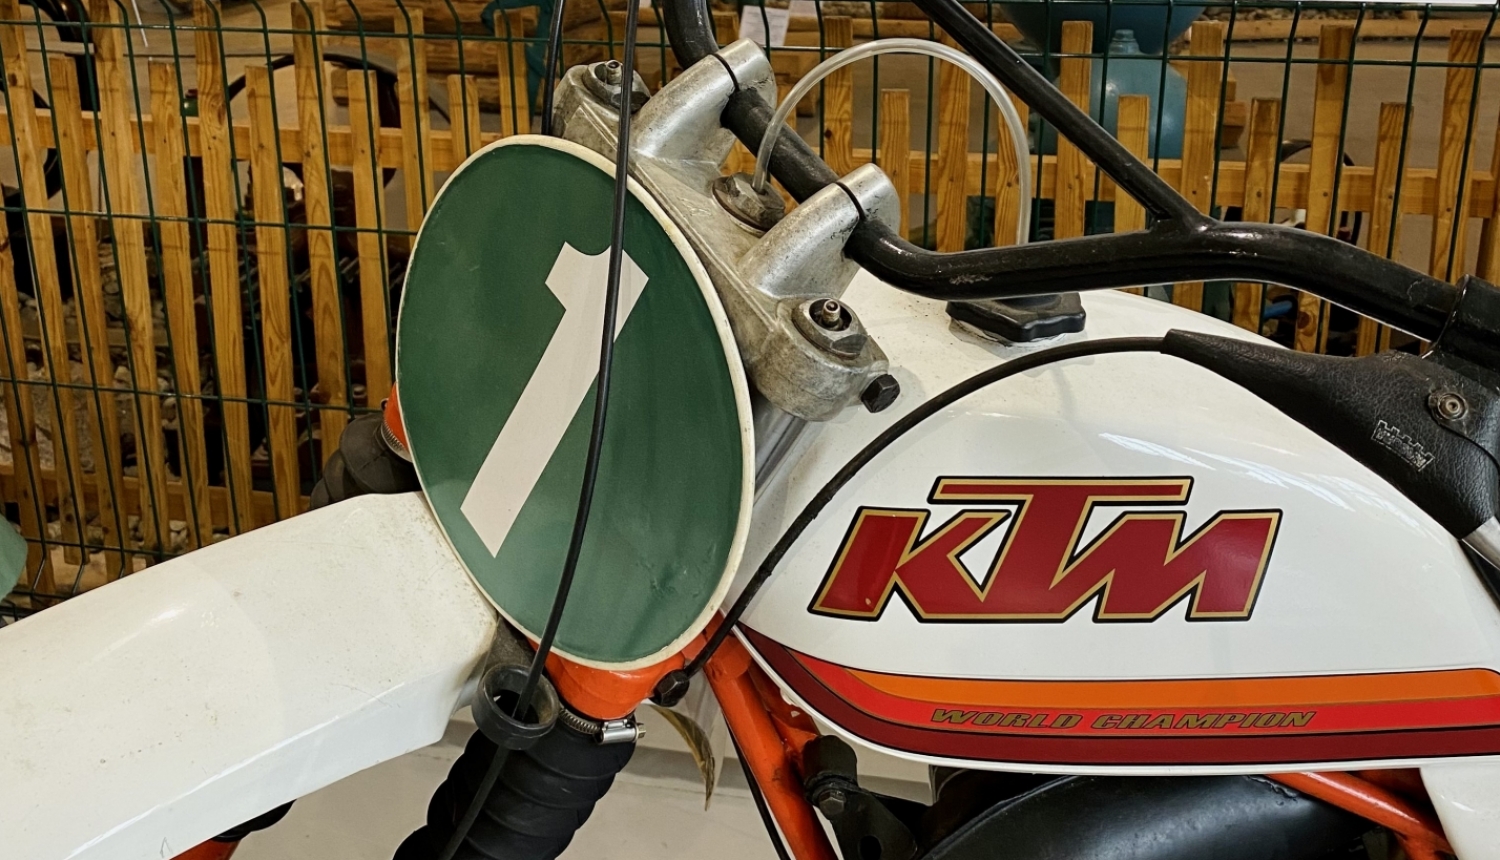 Krosa motocikla KTM stūres un bākas daļa. Motocikla numurs viens. Fonā muzeja kāda no izstādes sienām